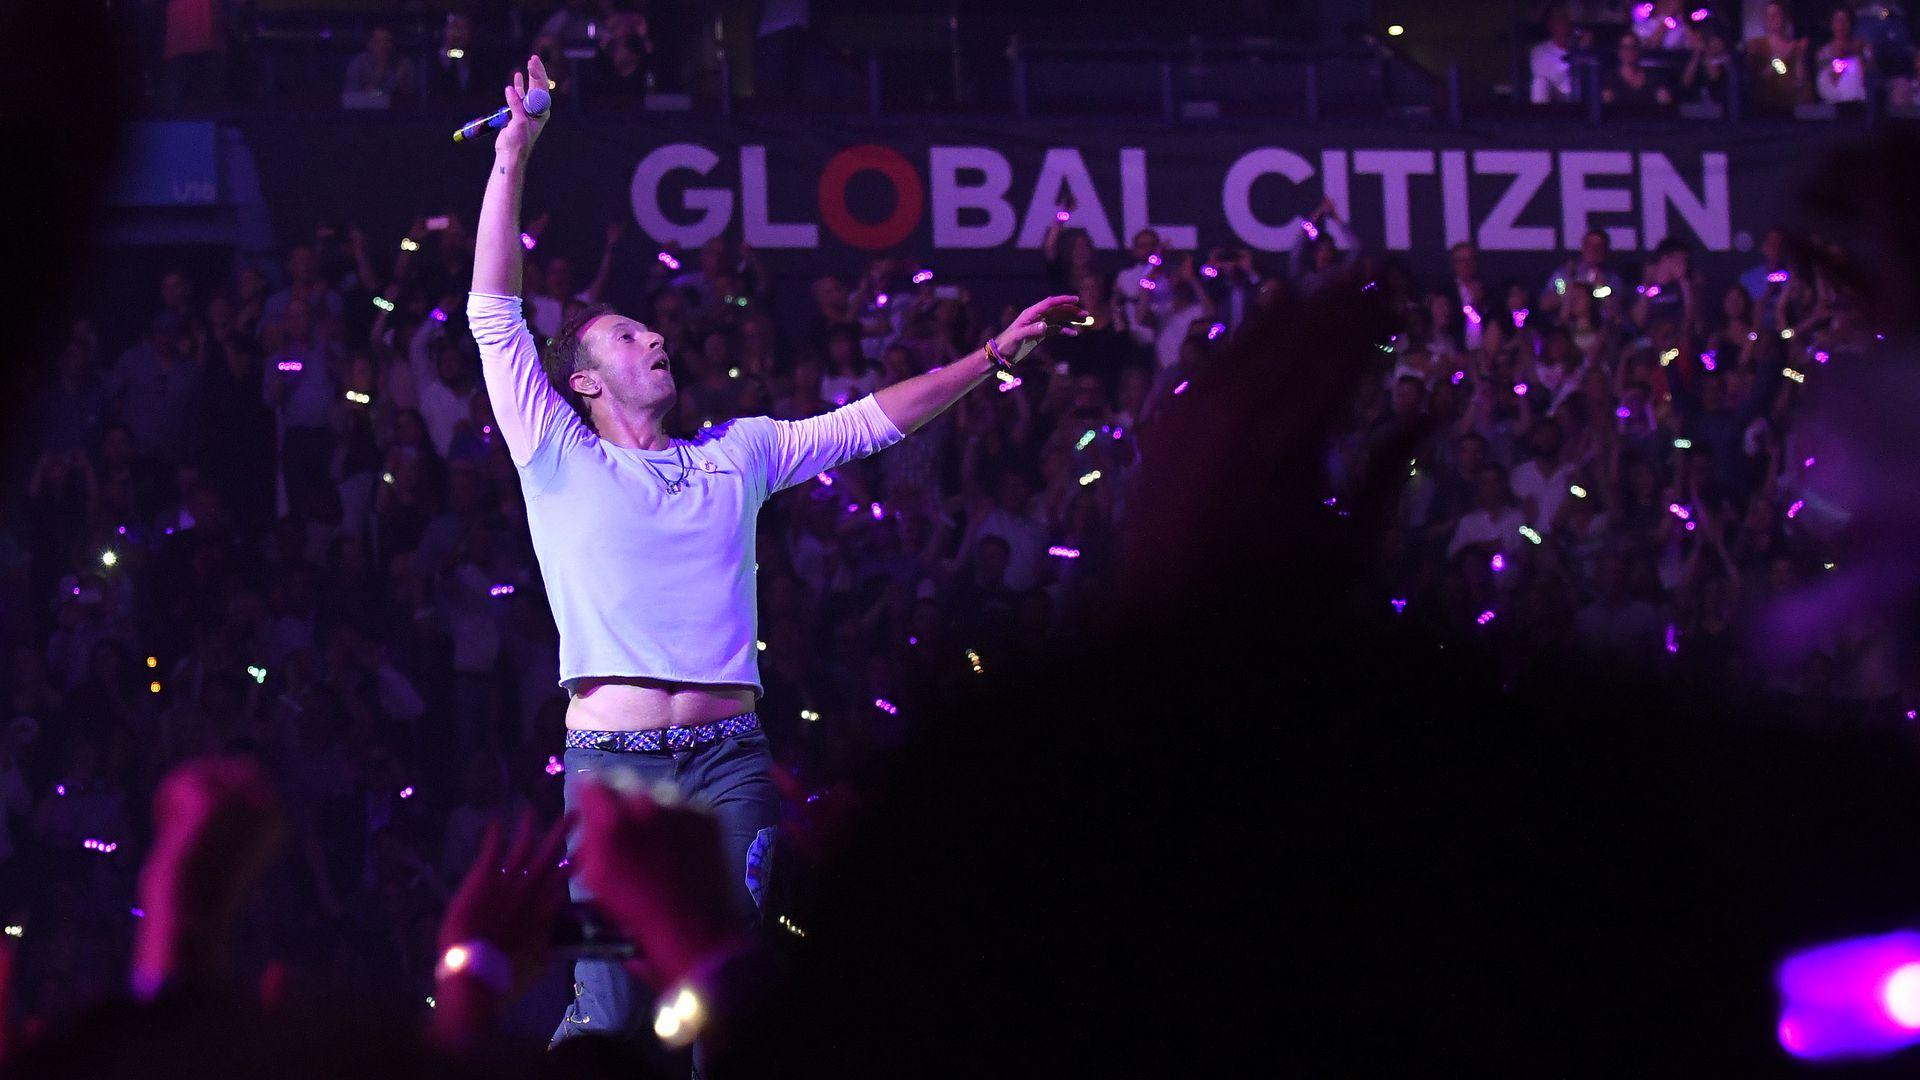 Global Citizen Plans Live Aid Style Concert Across 5